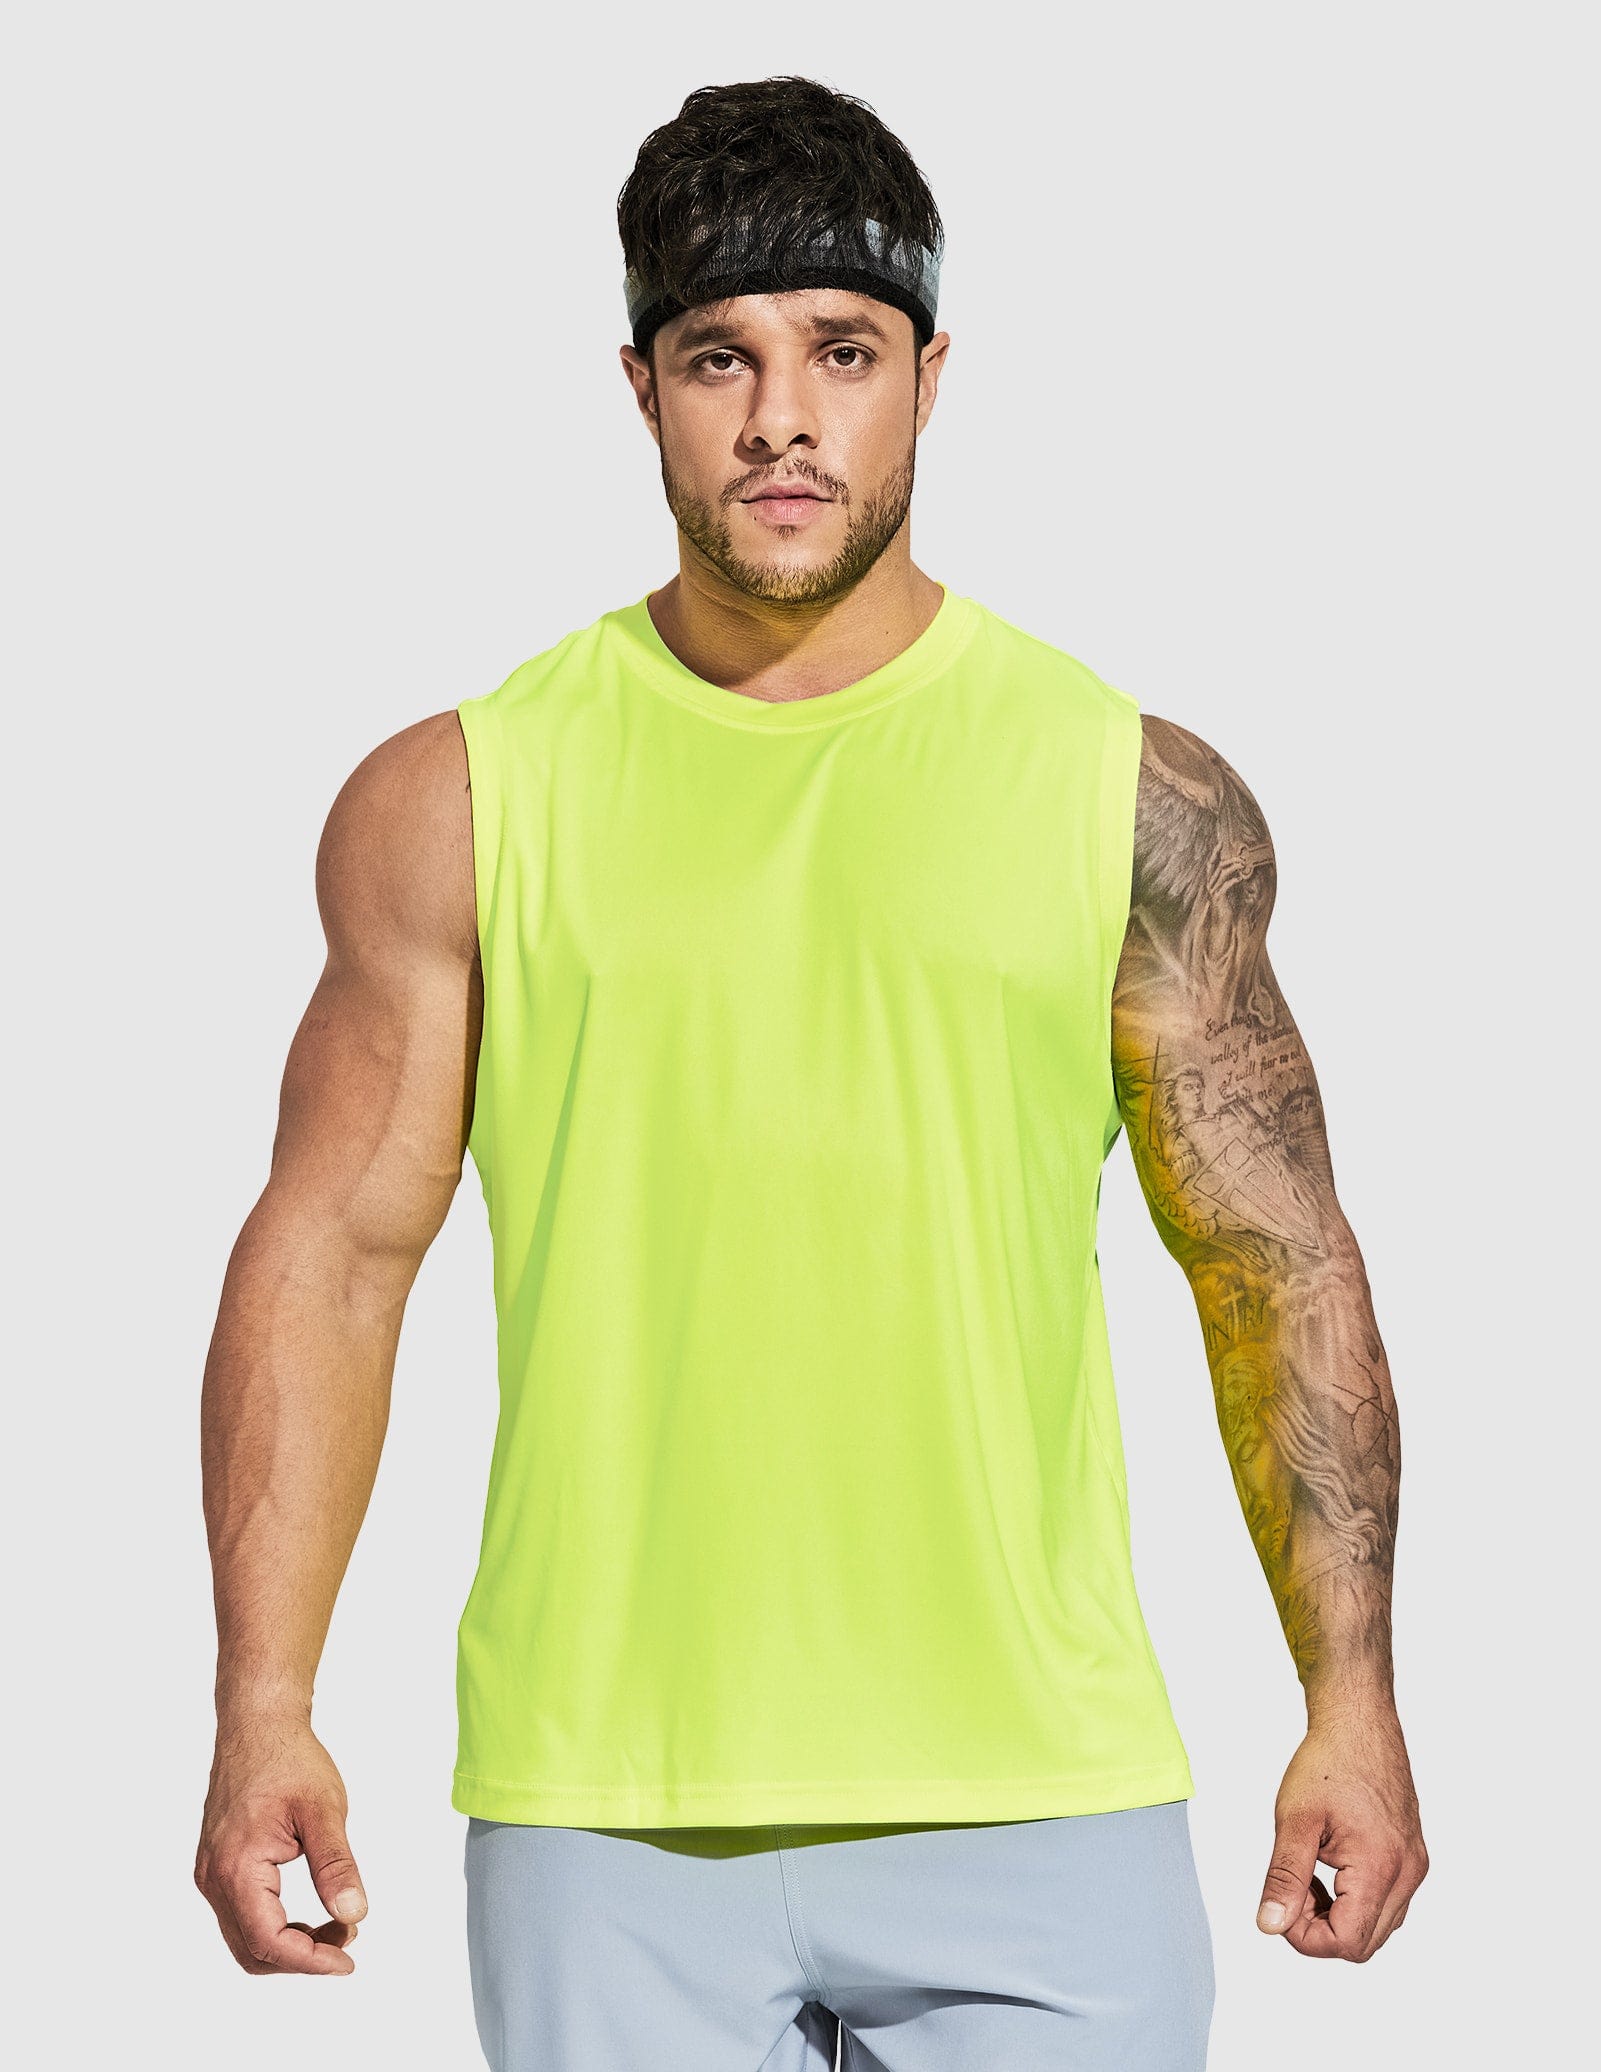 Men's Lightweight UPF 50+ Sun Shirts Quick Dry Tank Tops Men's Tank Top Lemon Green / S MIER